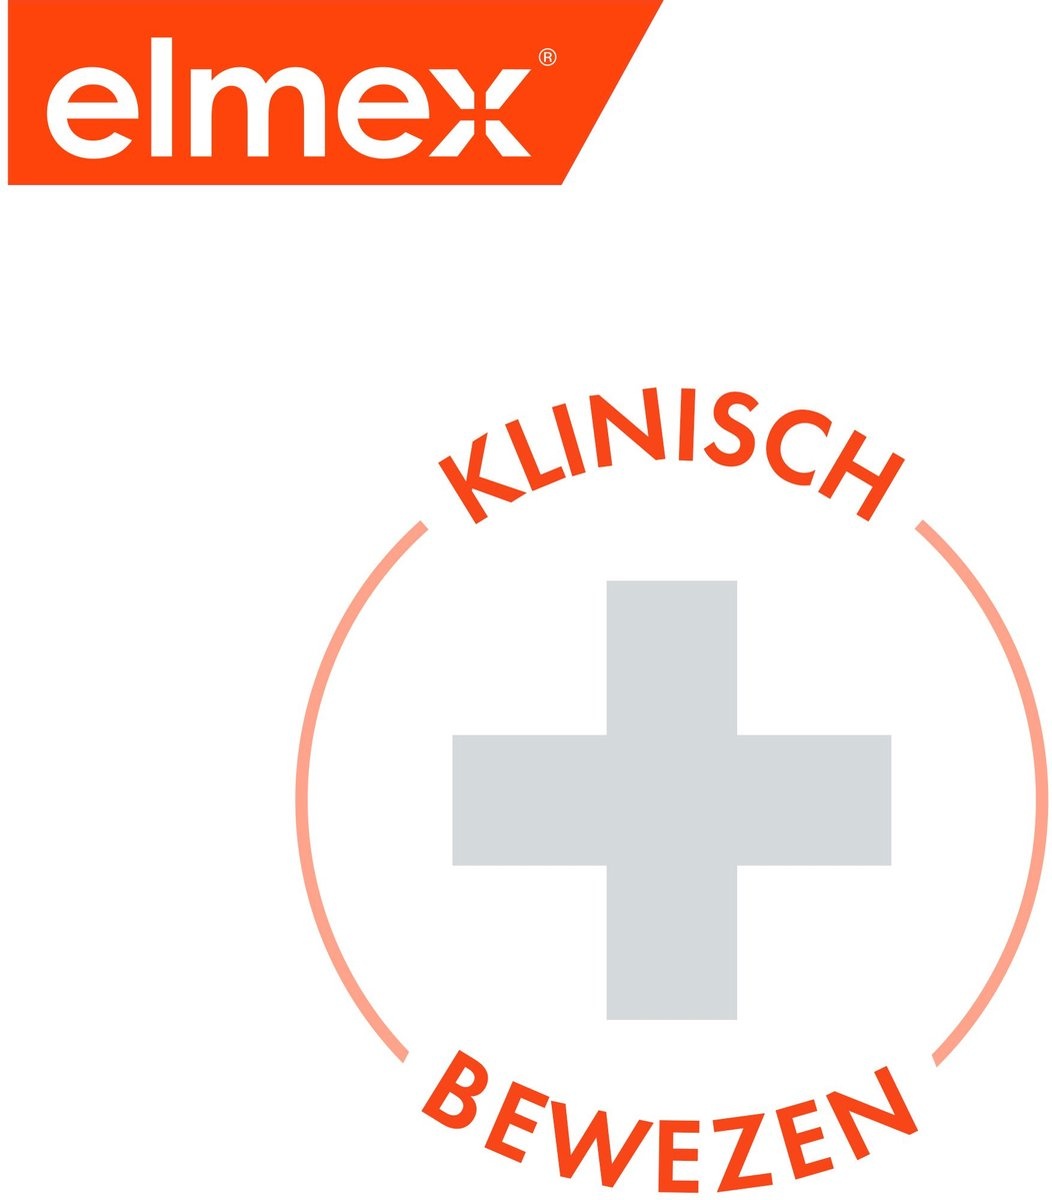 Elmex Anti Caries Tandpasta 4 x 75ml - Voordeelverpakking - Verpakking beschadigd